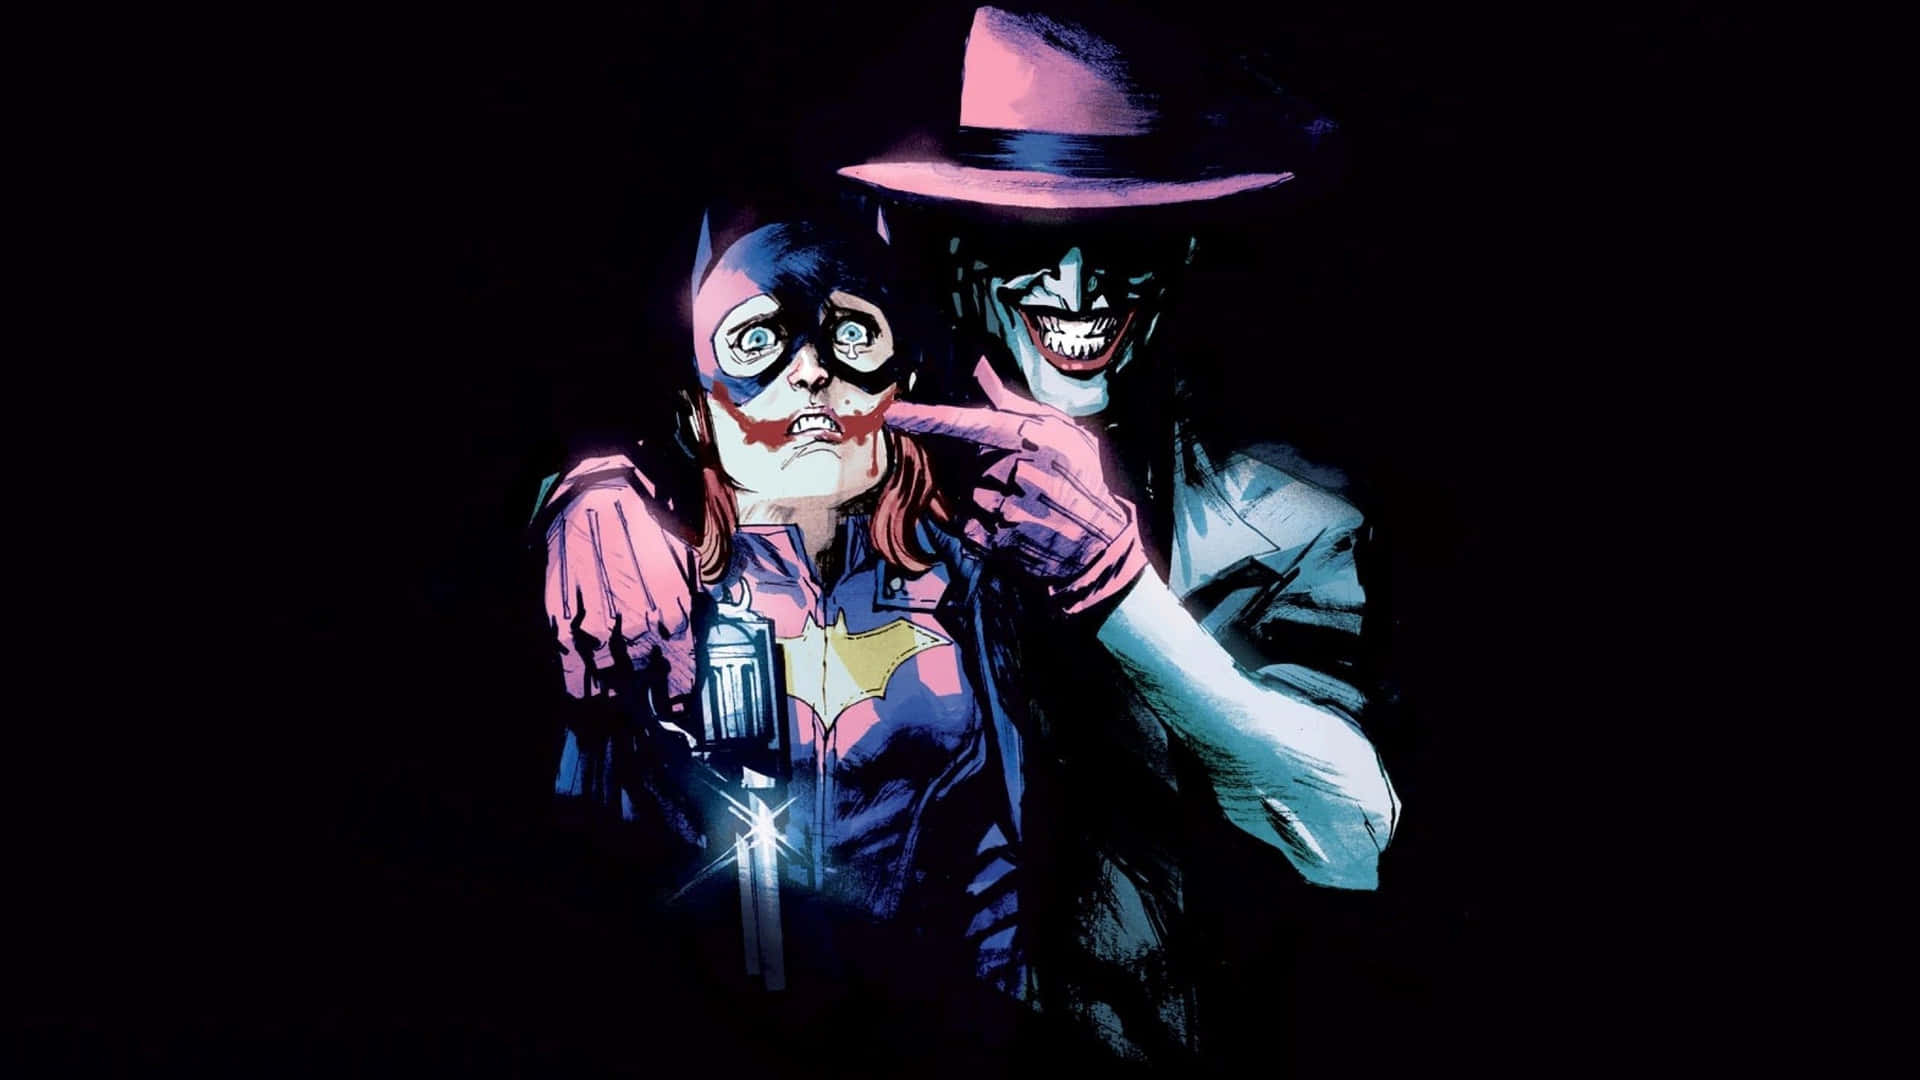 Scary Dangerous Joker With Batwoman Wallpaper